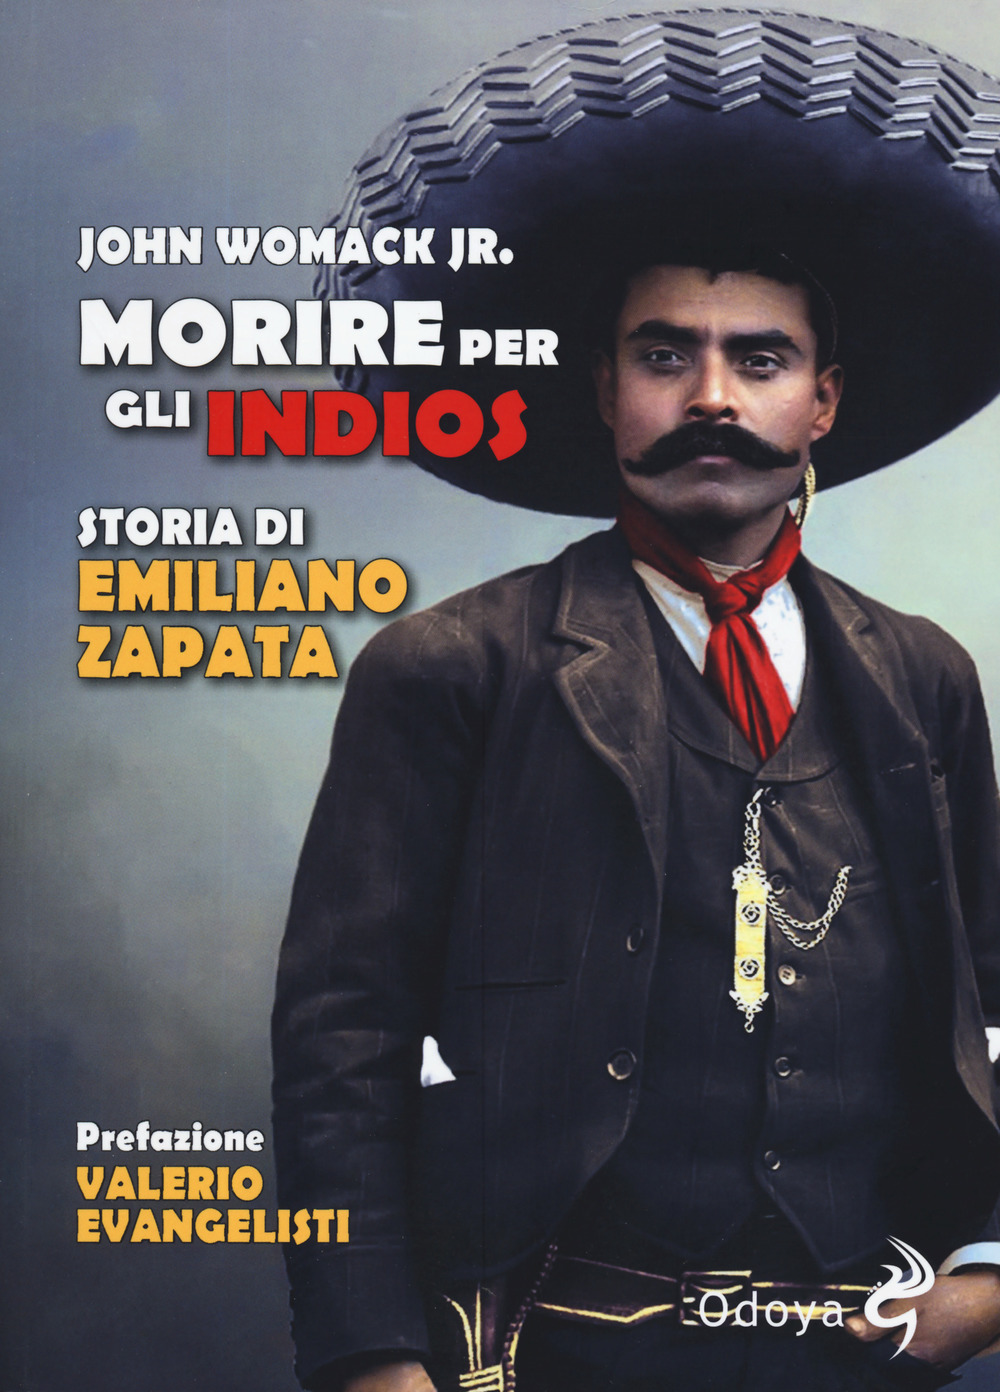 Libri John Womack - Morire Per Gli Indios. Storia Di Emiliano Zapata NUOVO SIGILLATO, EDIZIONE DEL 25/07/2019 SUBITO DISPONIBILE